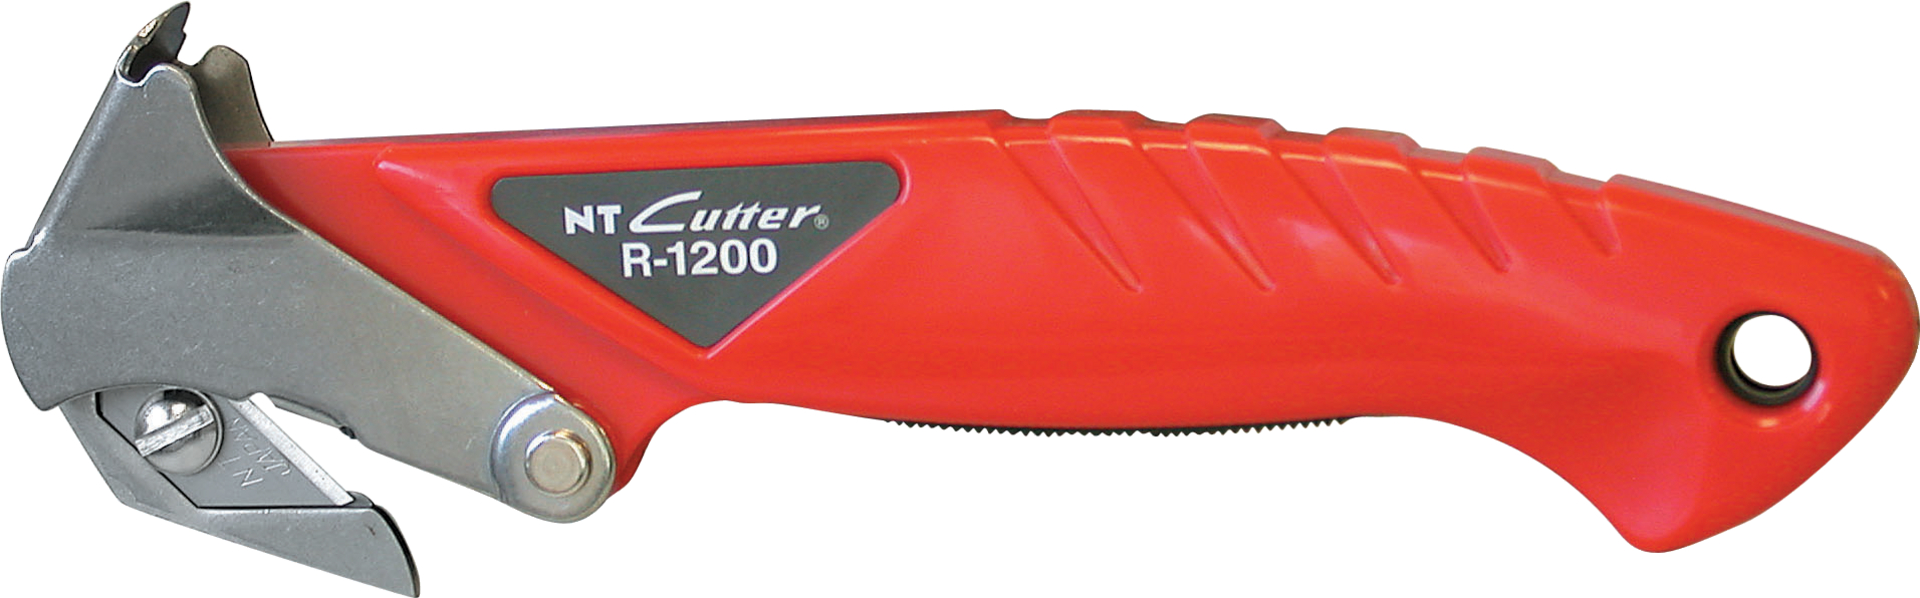 Kartonöffner NT Cutter R-1200P